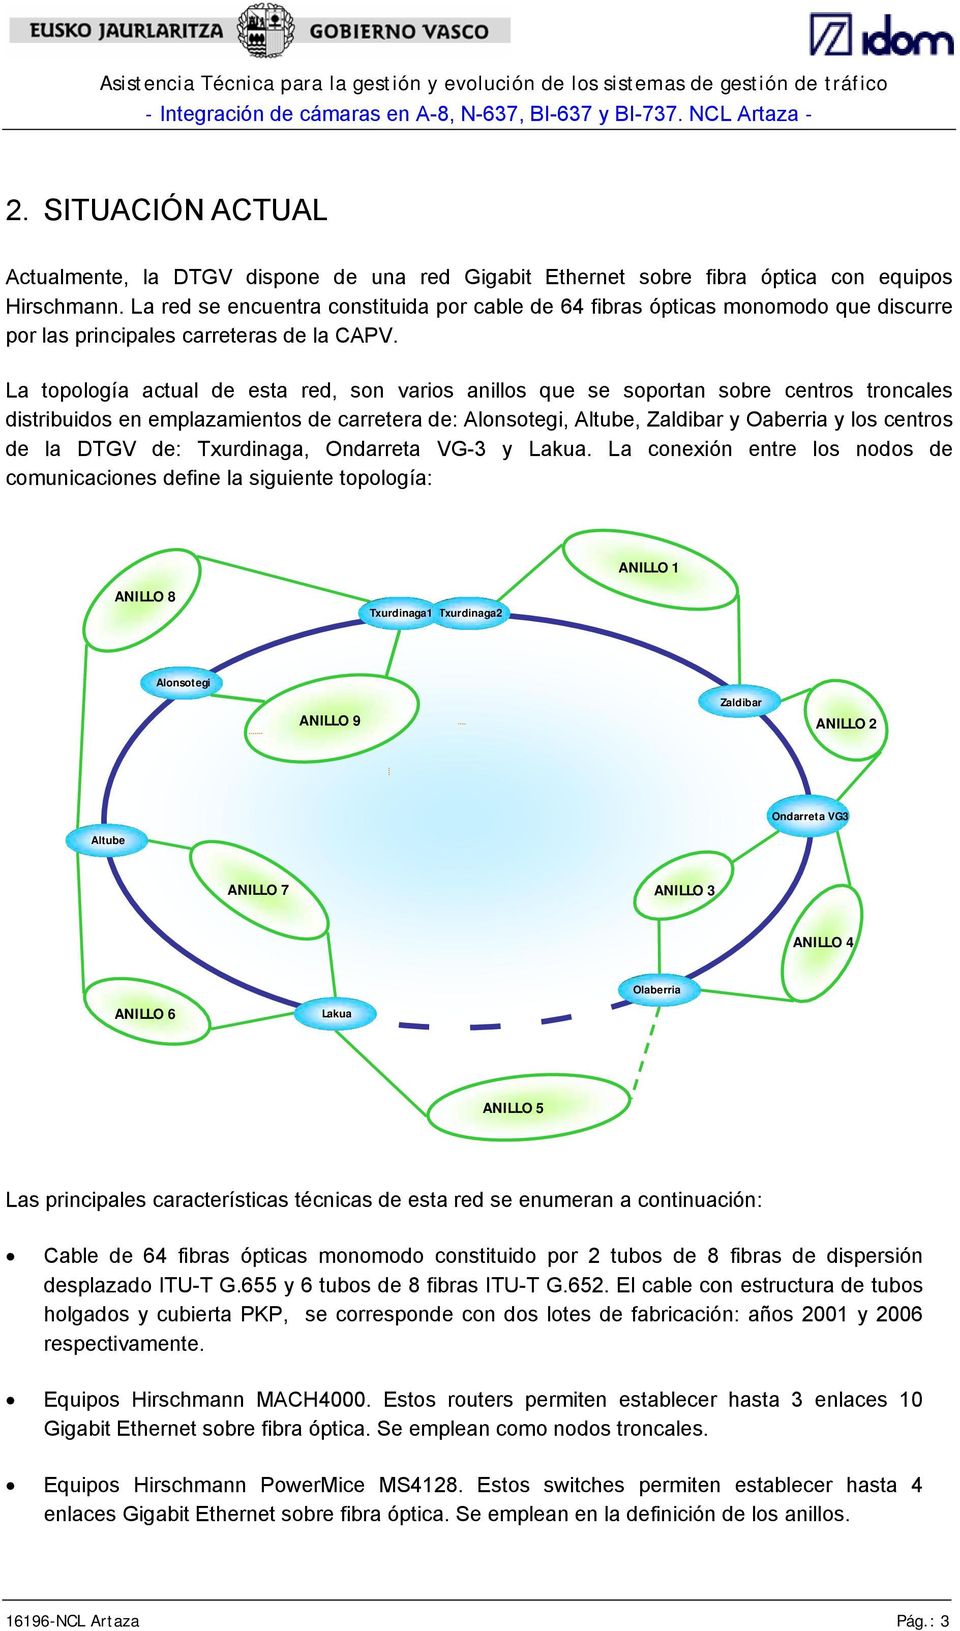 La topología actual de esta red, son varios anillos que se soportan sobre centros troncales distribuidos en emplazamientos de carretera de: Alonsotegi, Altube, Zaldibar y Oaberria y los centros de la